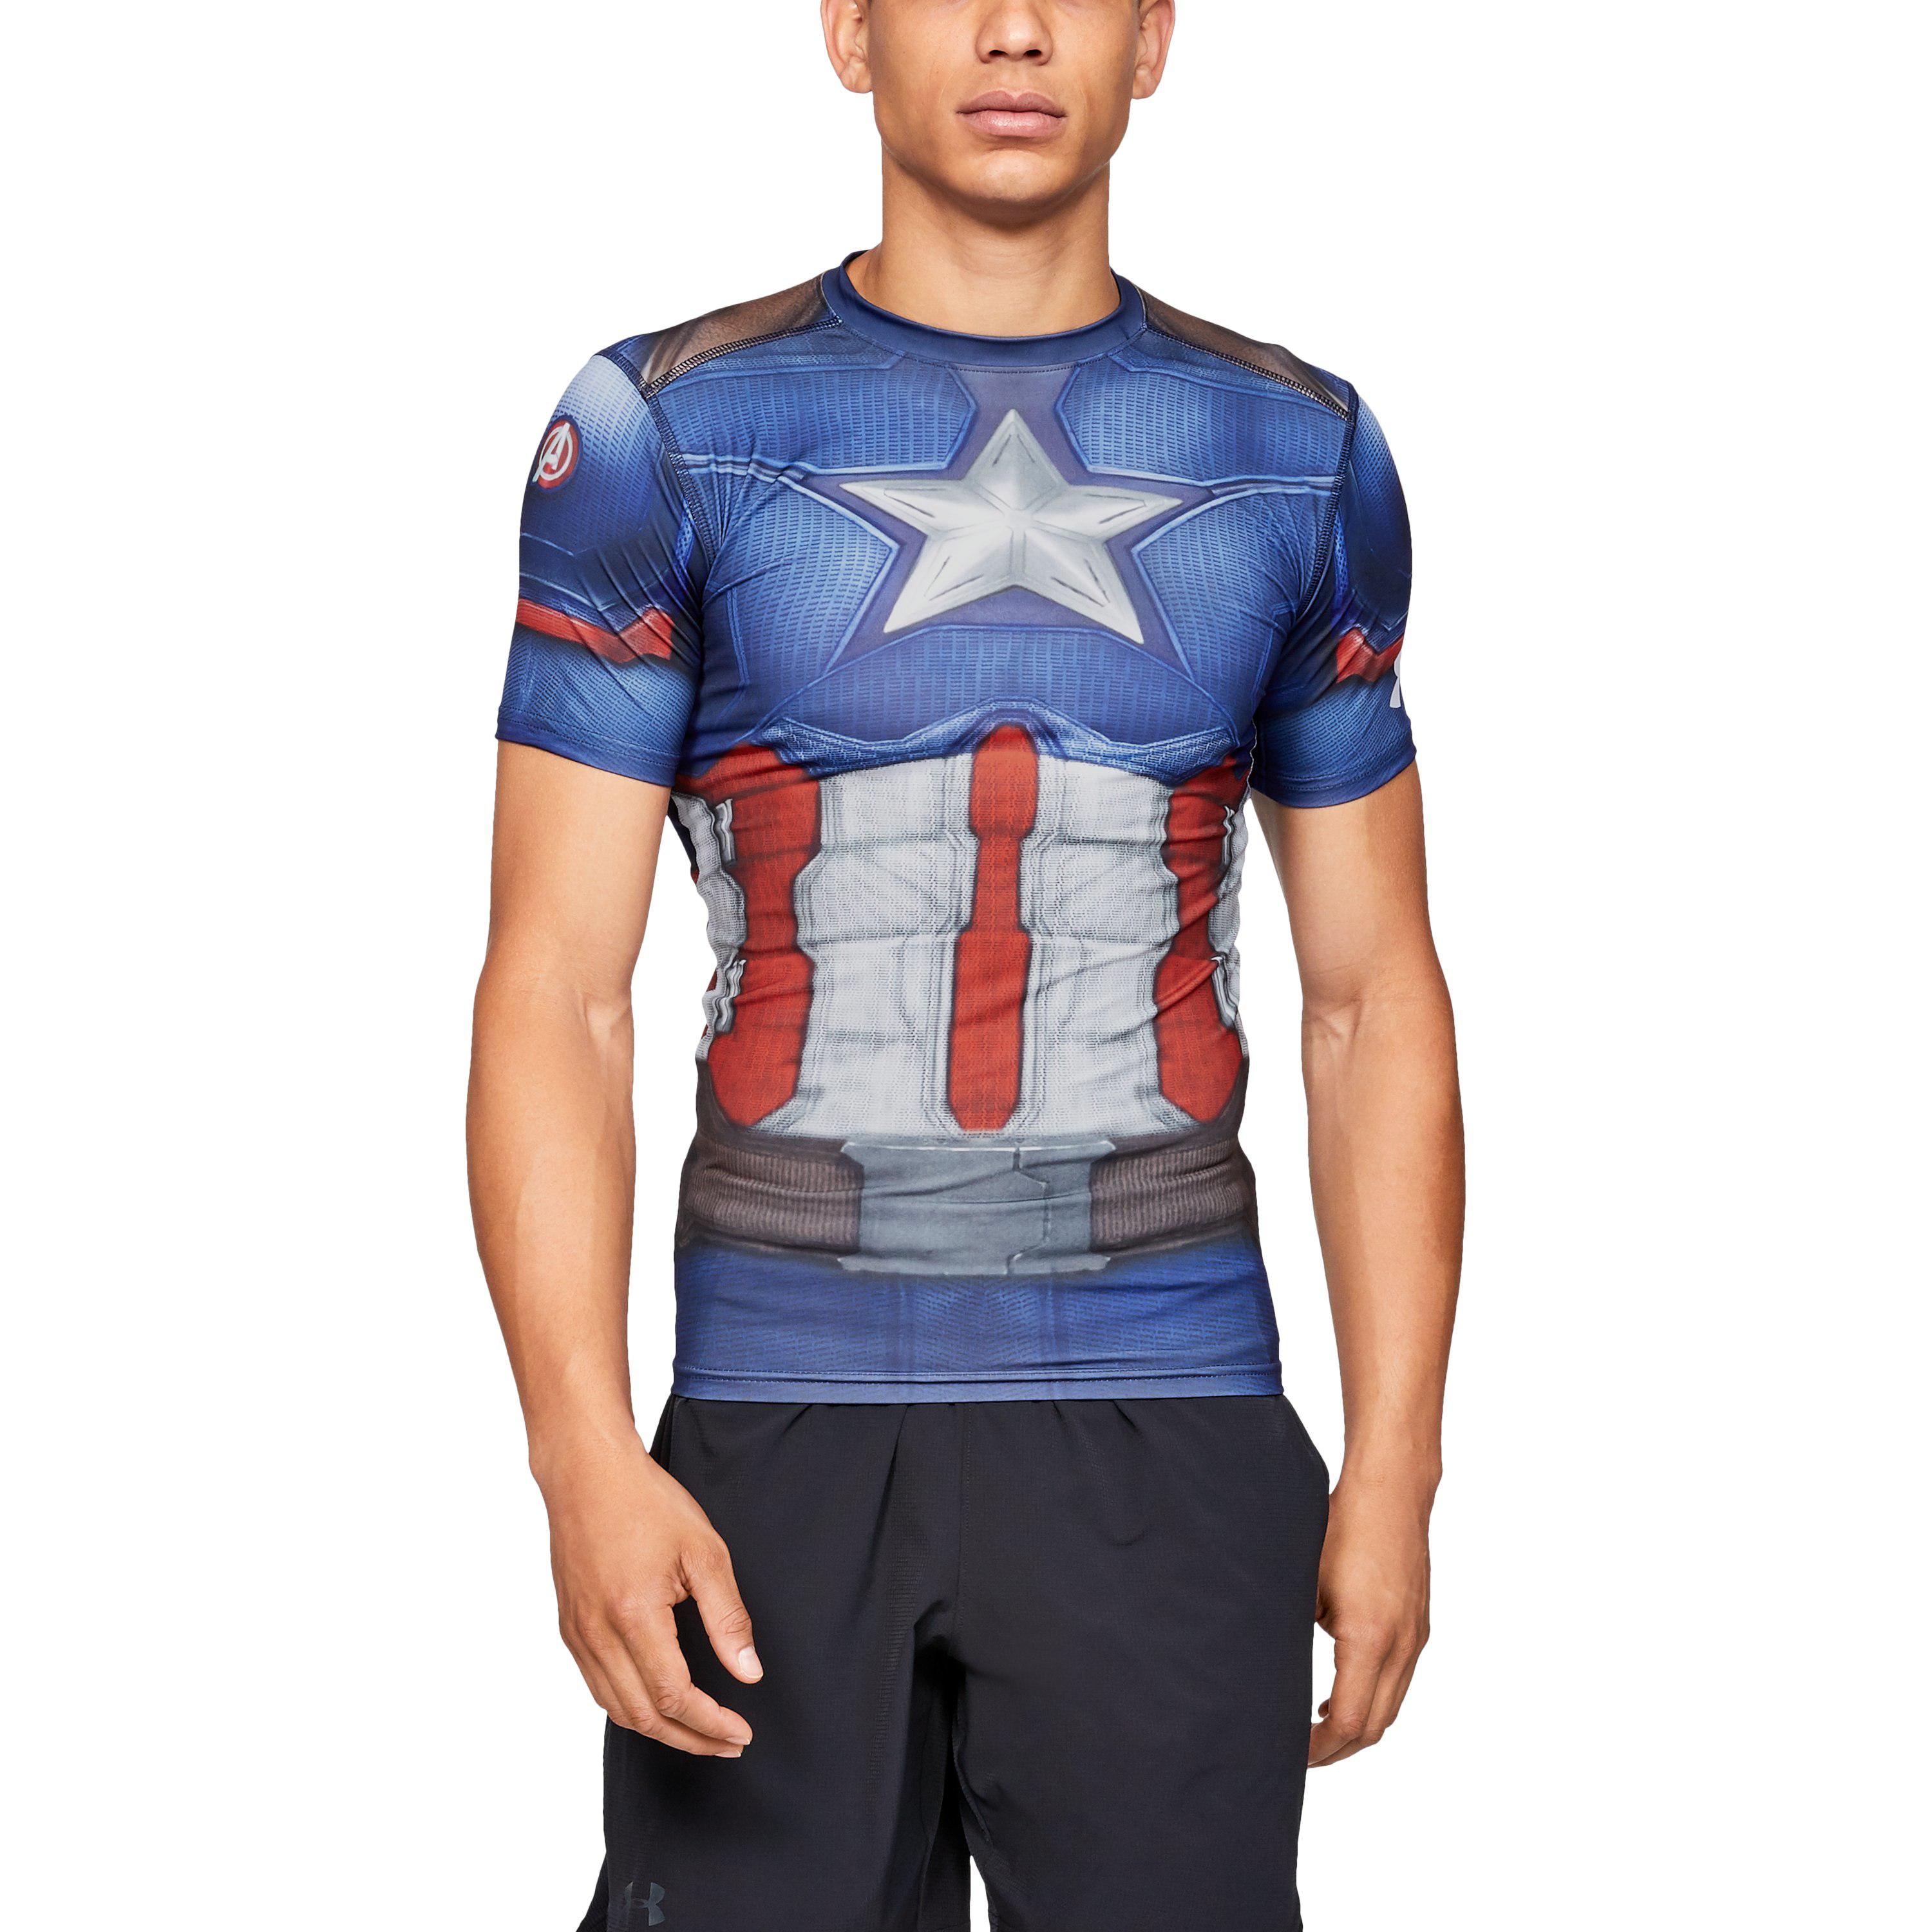 UNDER ARMOUR Mens Captain America Alter Ego Compression Shirt NWT 1244399 $45 XL